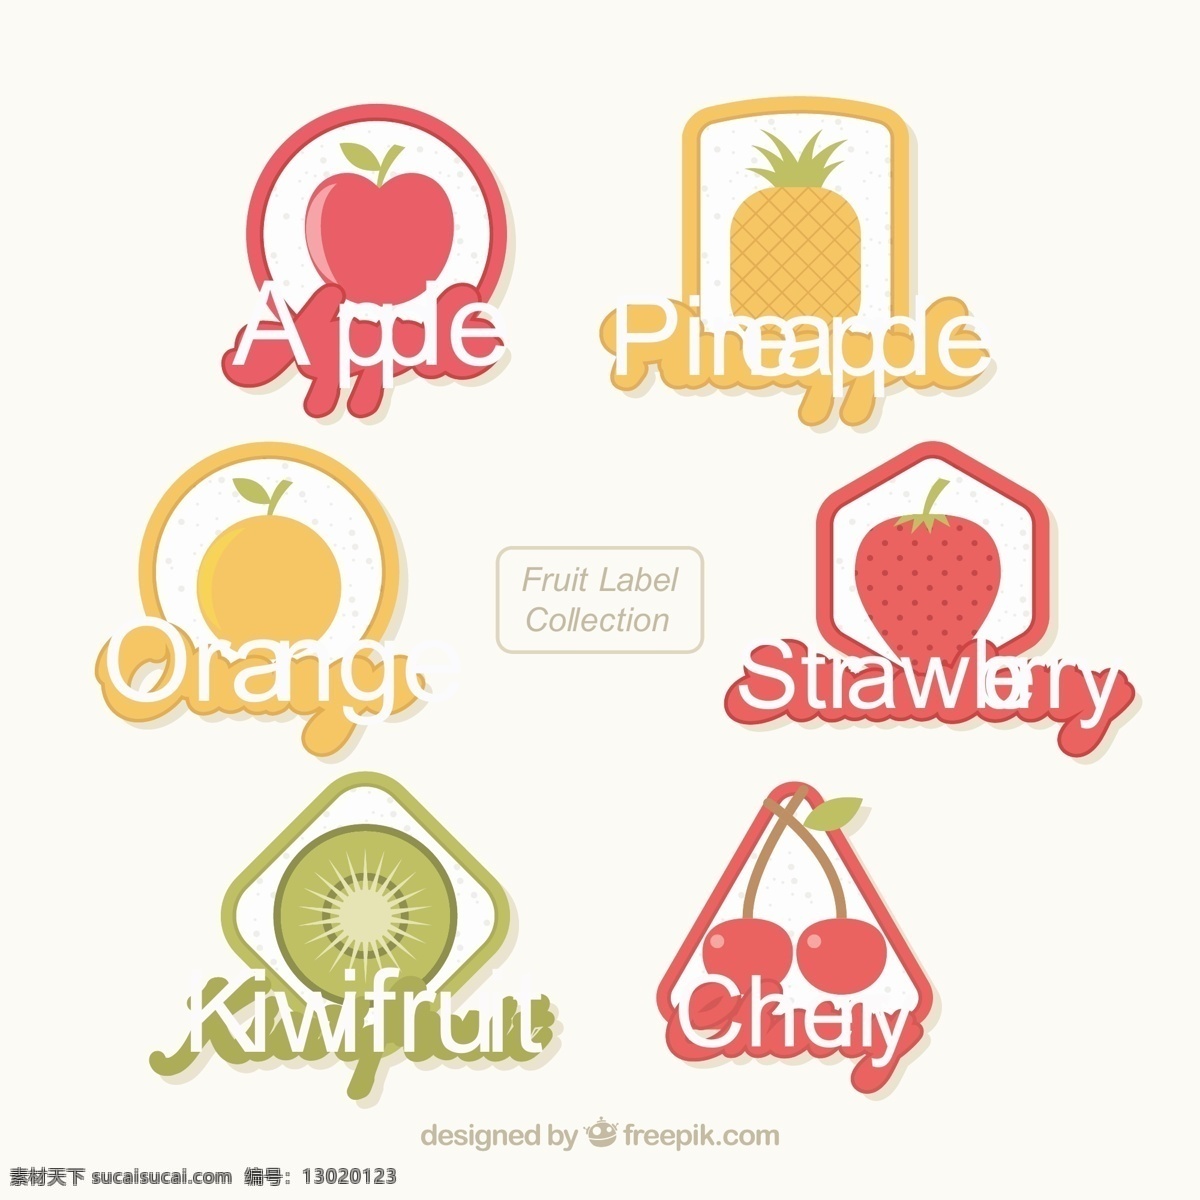 水果 标签 集合 食品 夏天 贴纸 桔子 蔬菜 热带 苹果 烹饪 饮料 有机 果汁 天然 健康 草莓 菠萝 吃